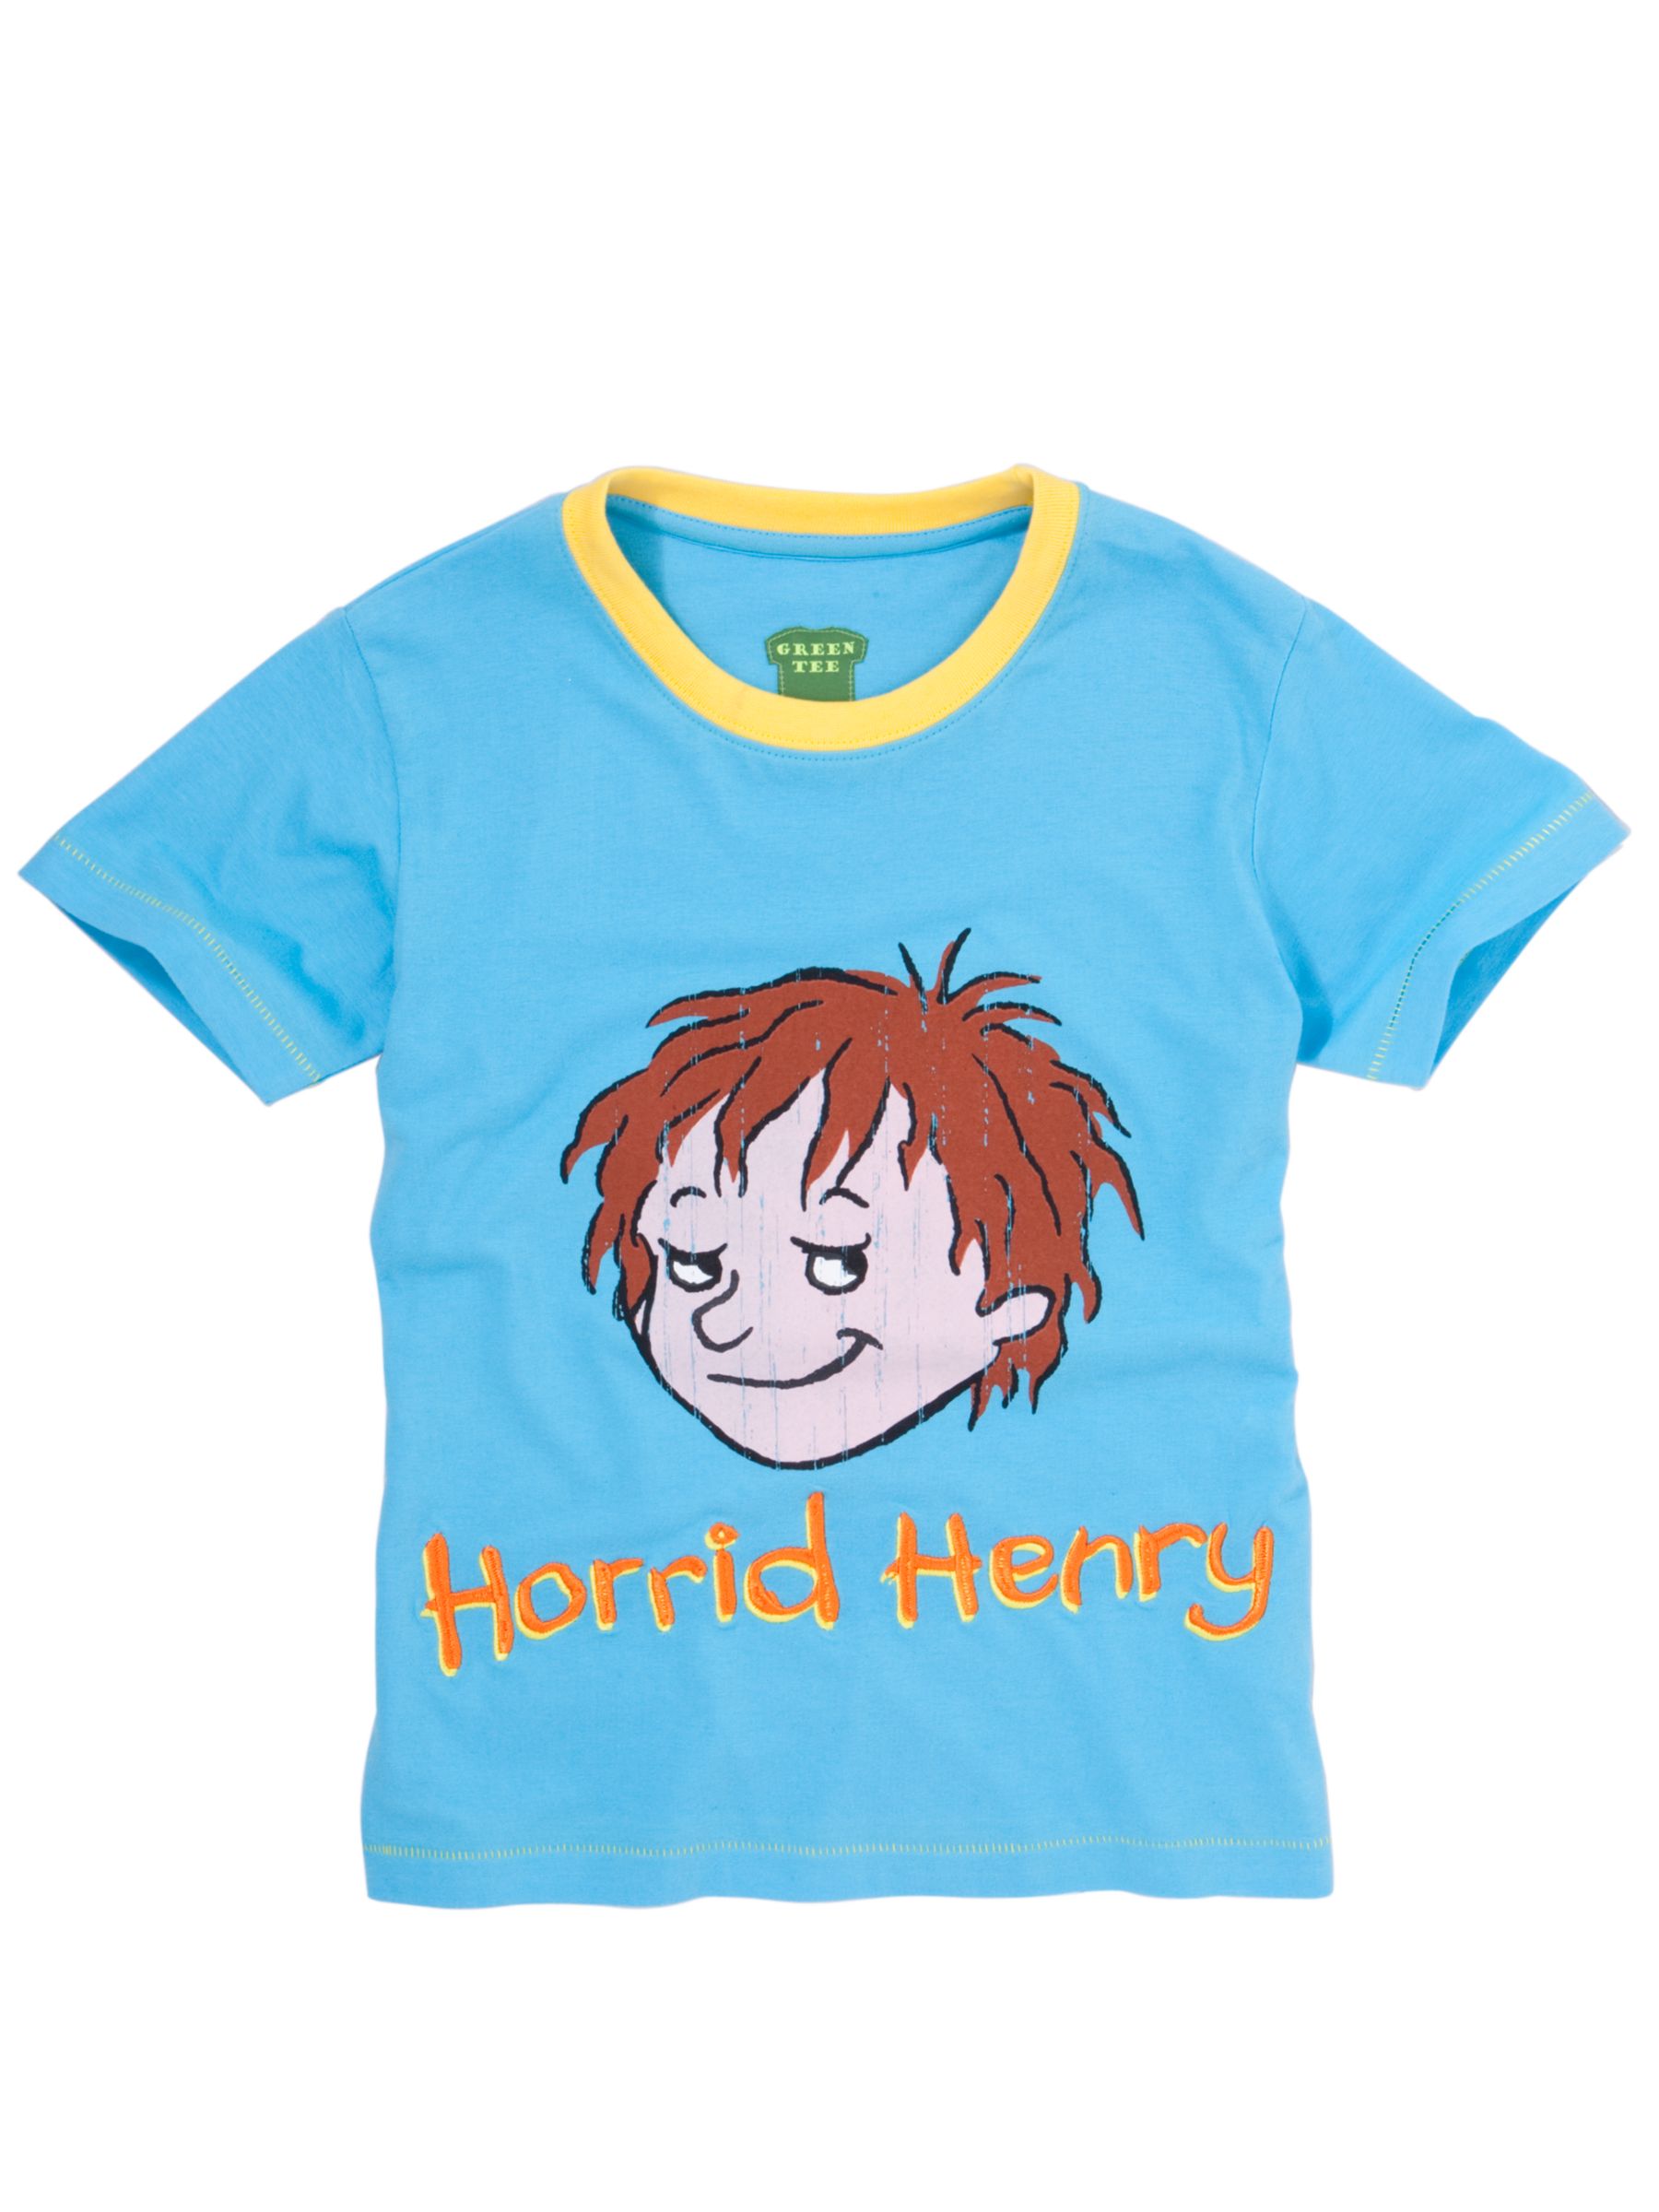 Horrid Henry T-Shirt, Blue